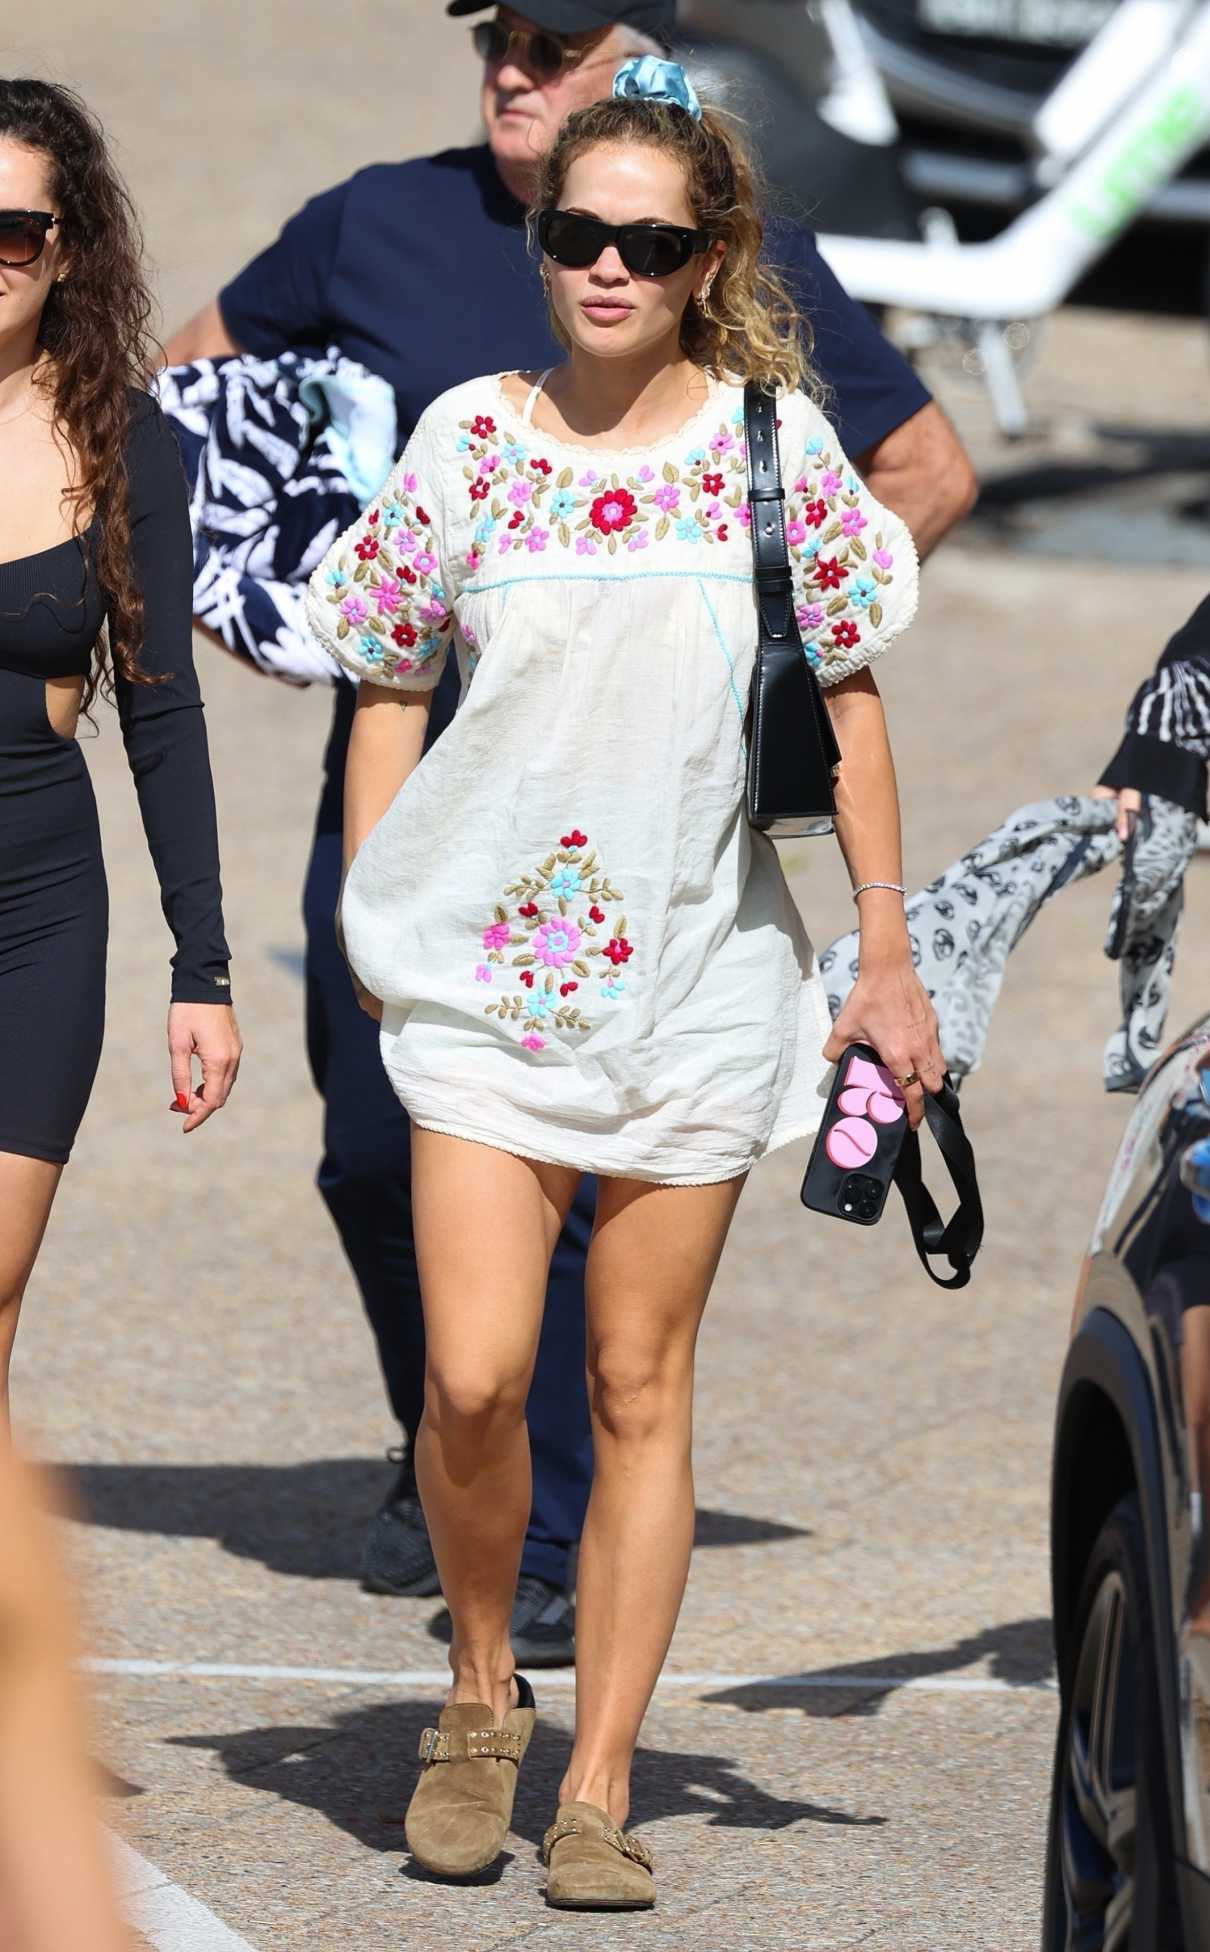 Rita Ora in a Floral T-shirt